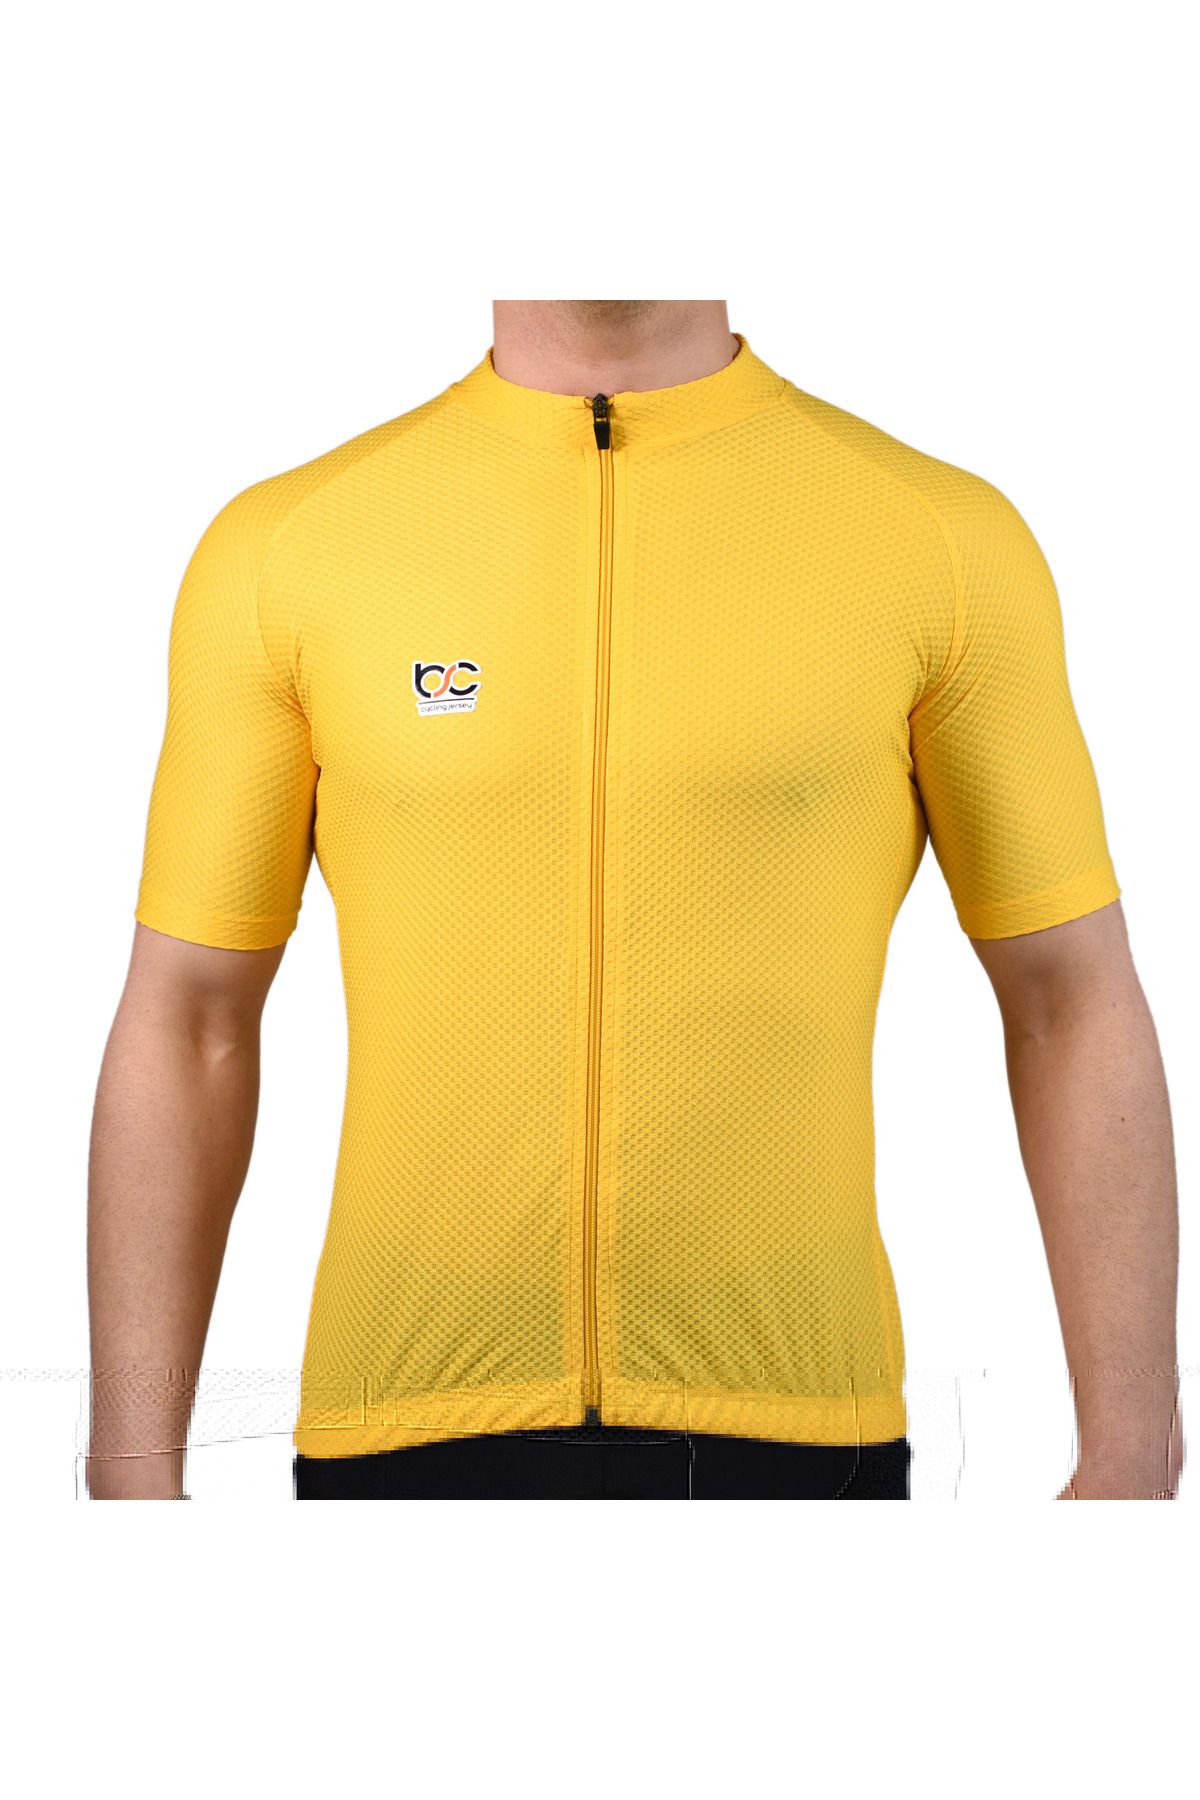 BSCYCLİNG Sarı Bisiklet Forması ( Petek Desen, Kısa Kol )